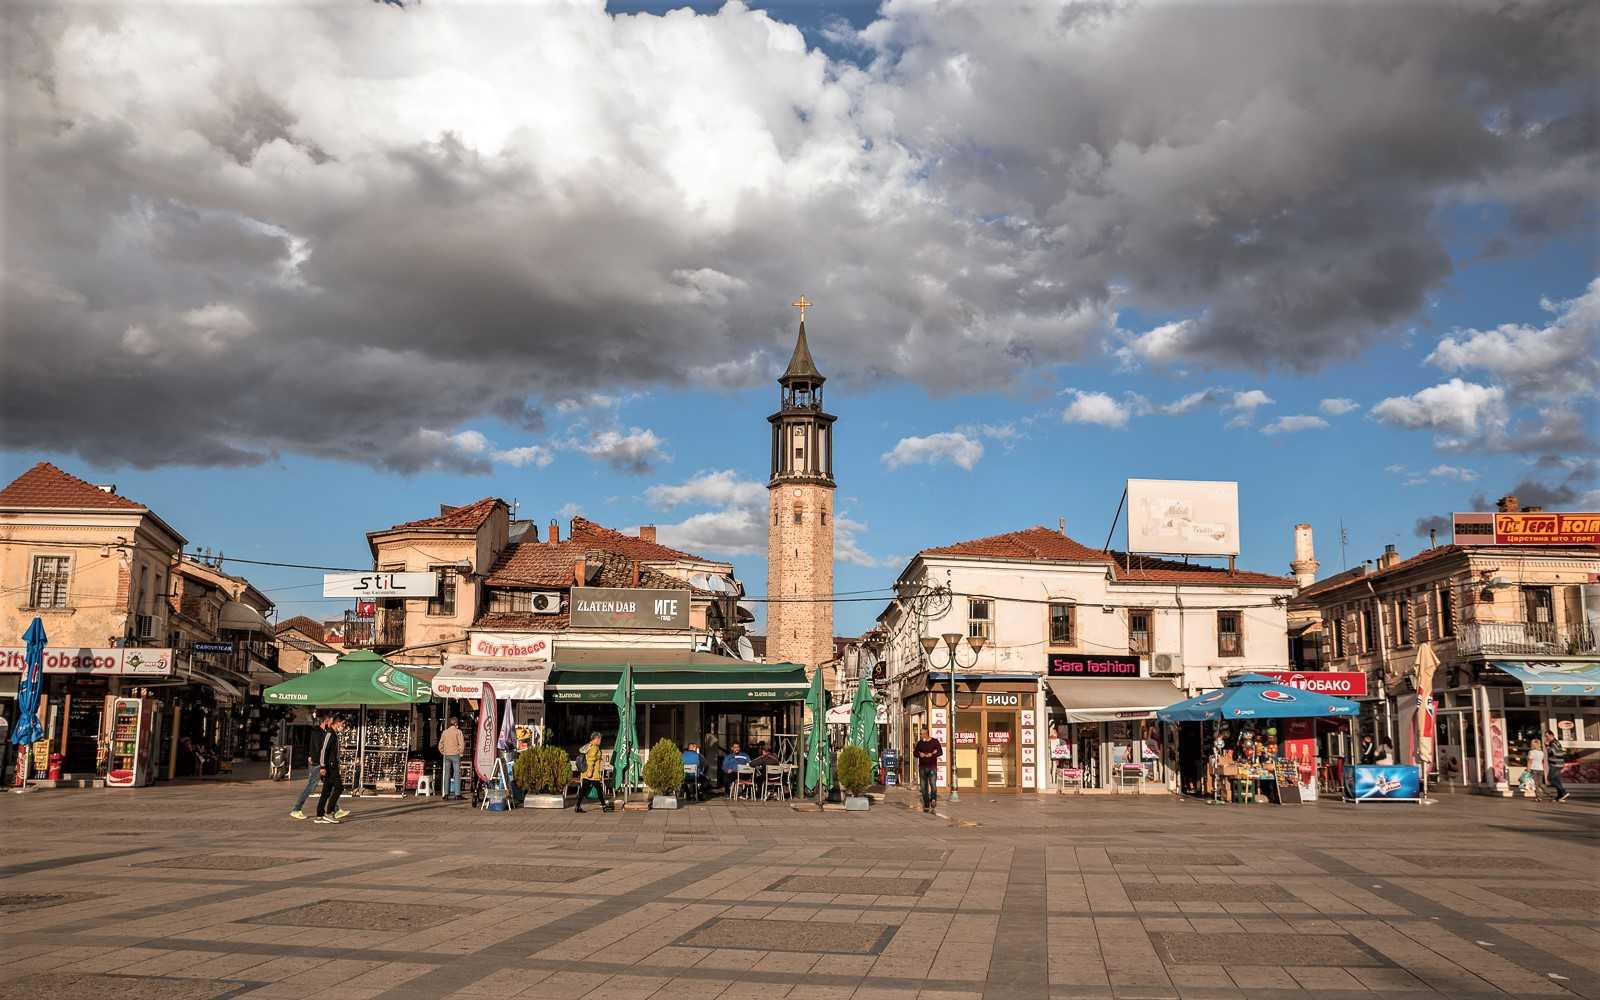 Turkish bazaar and clocktower